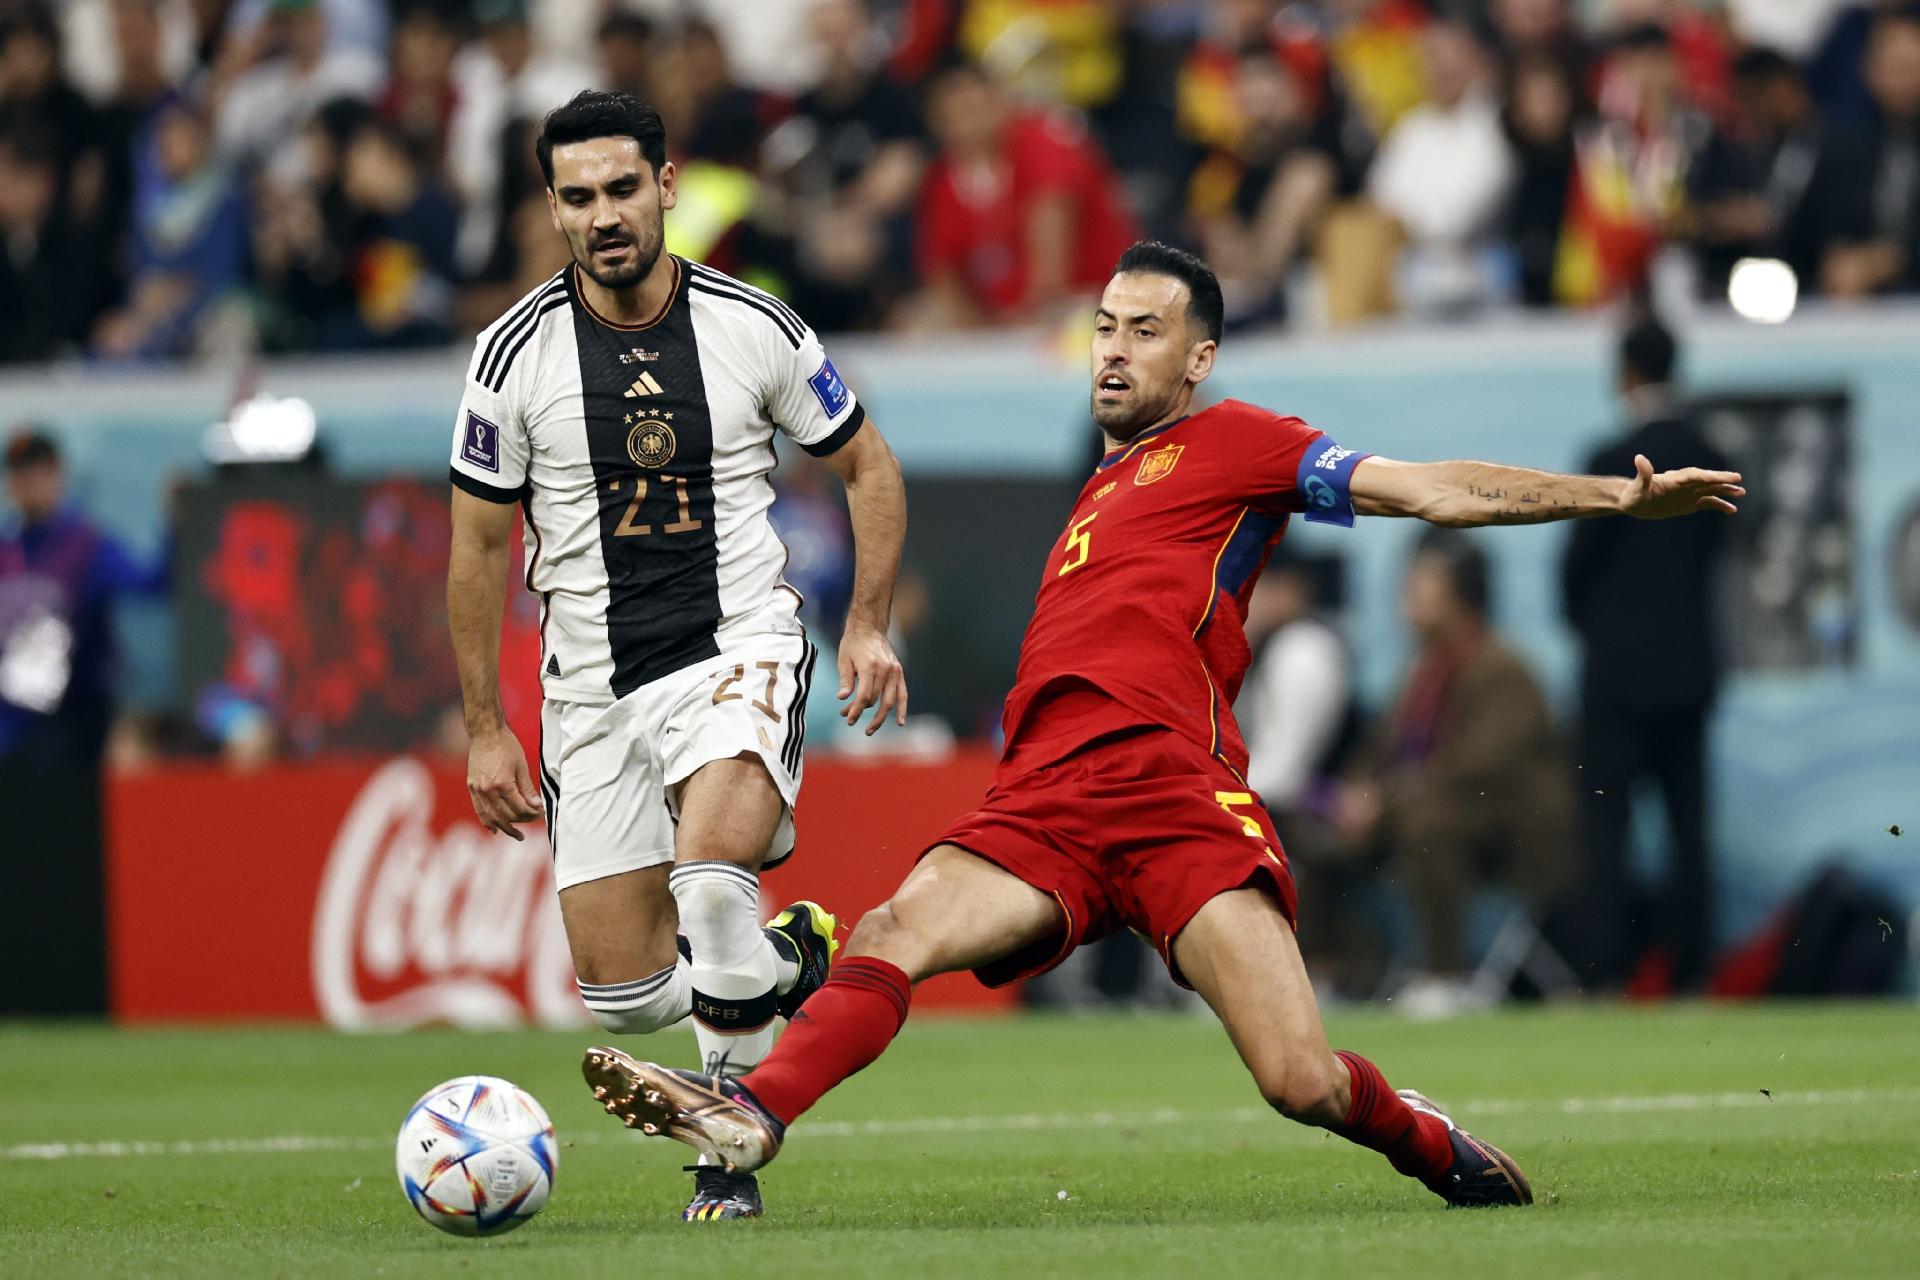 Espanha x Alemanha Final antecipada do Campeonato do Mundo?